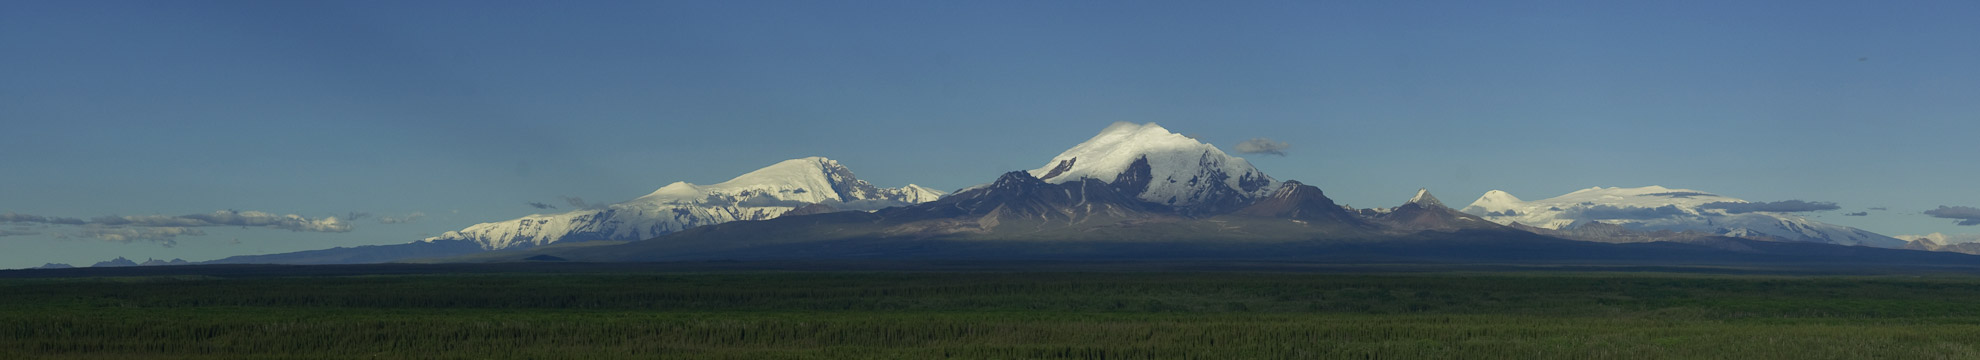 The Wrangell Mountains